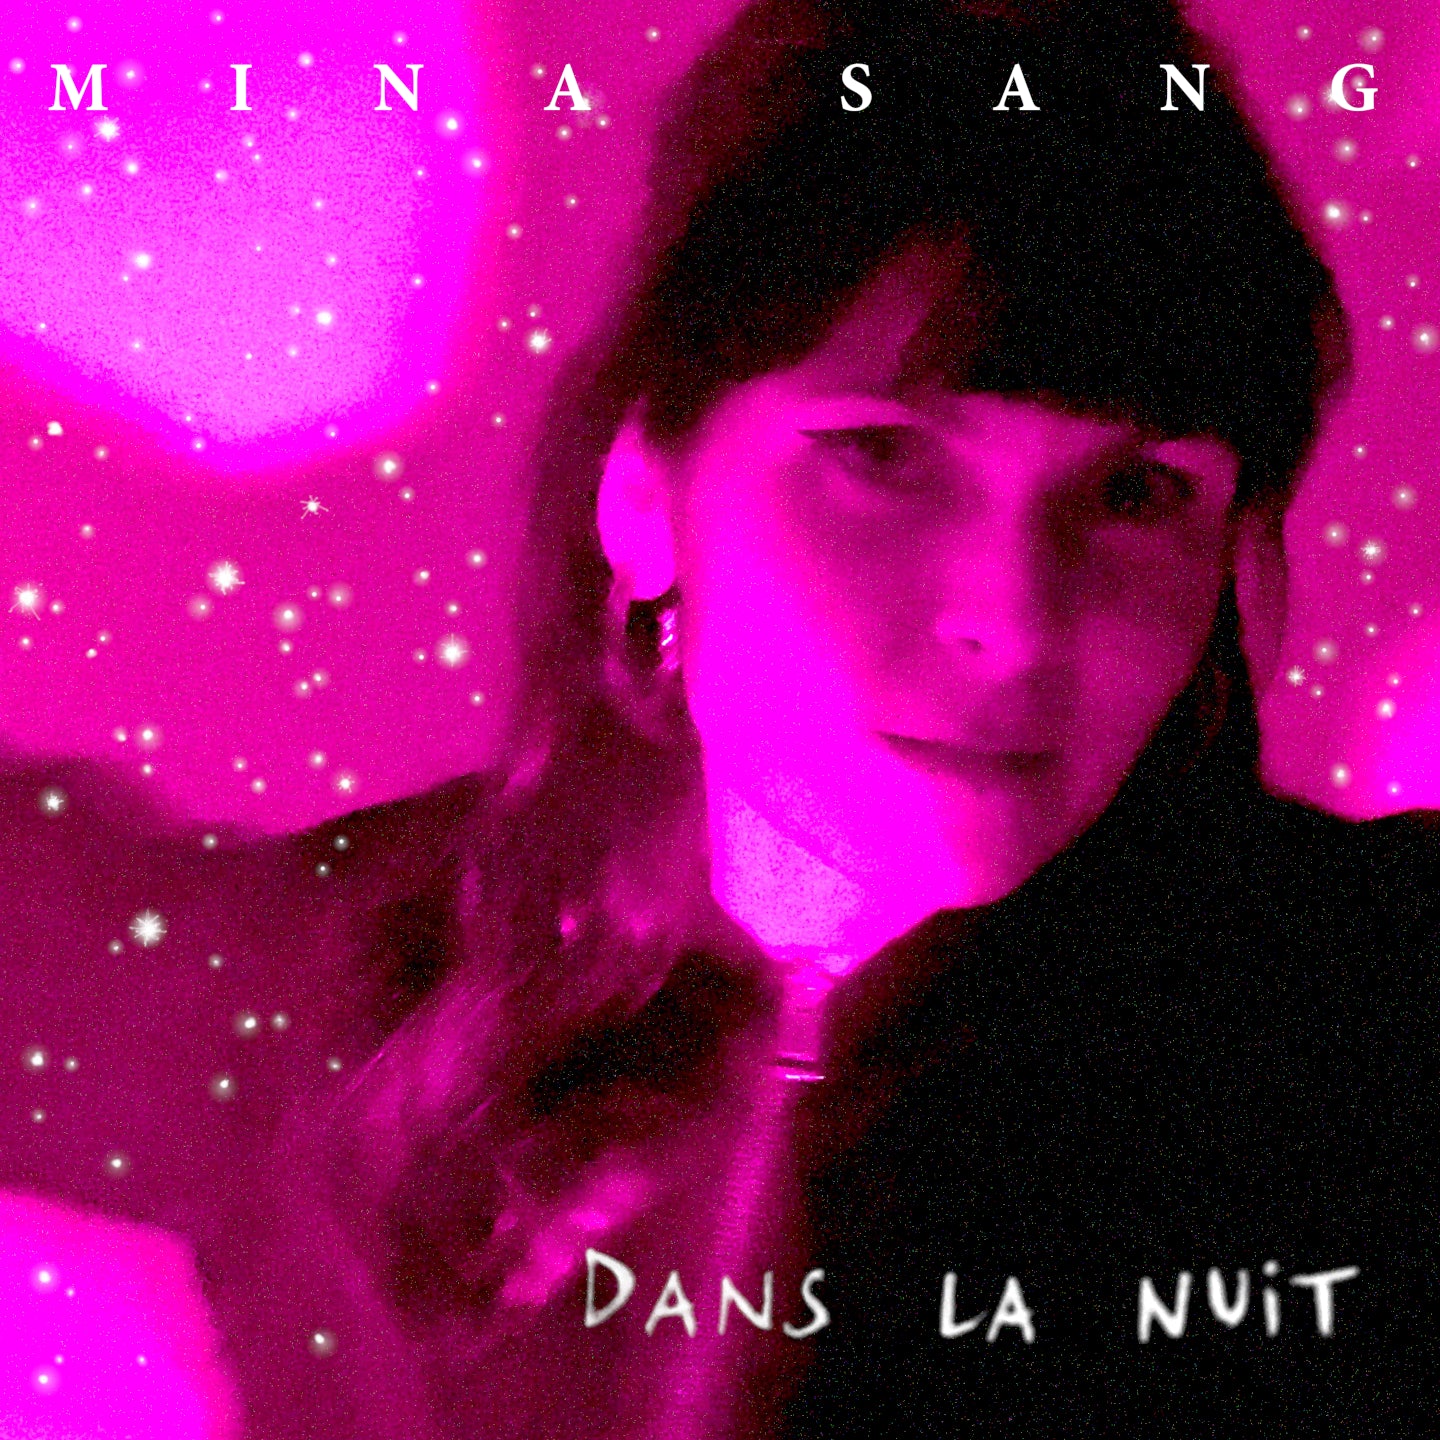 Pochette de : DANS LA NUIT - MINA SANG (CD)